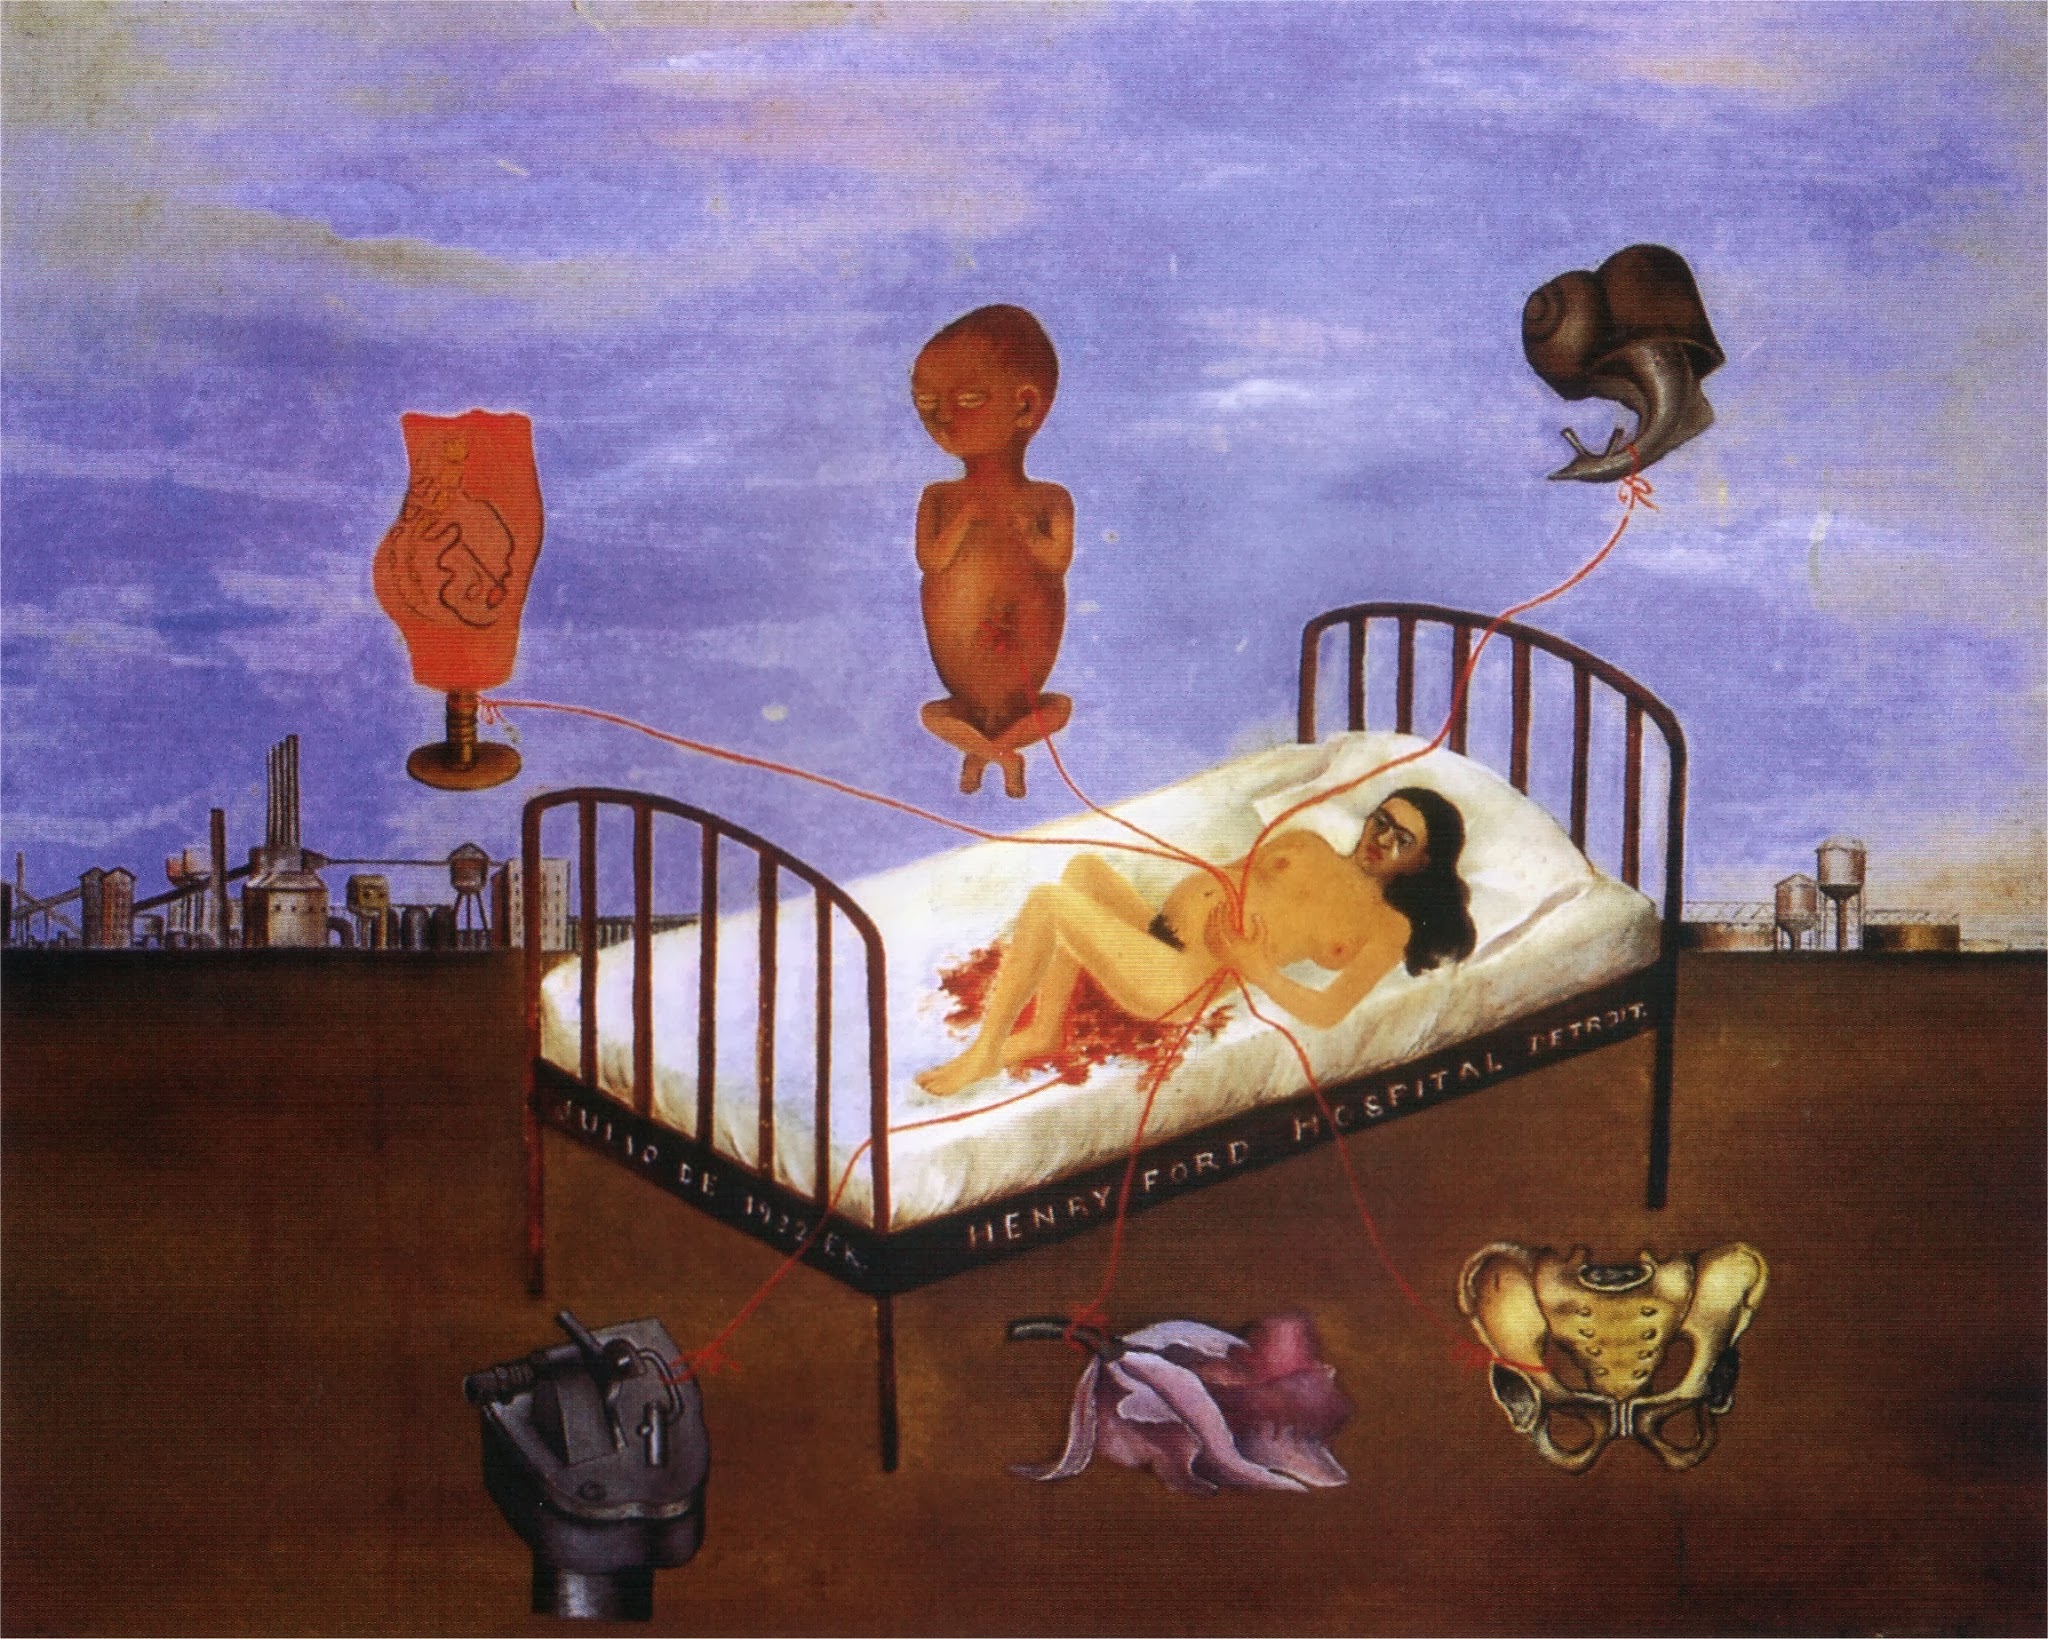 Frida kahlo henry ford hospital symbolism #10